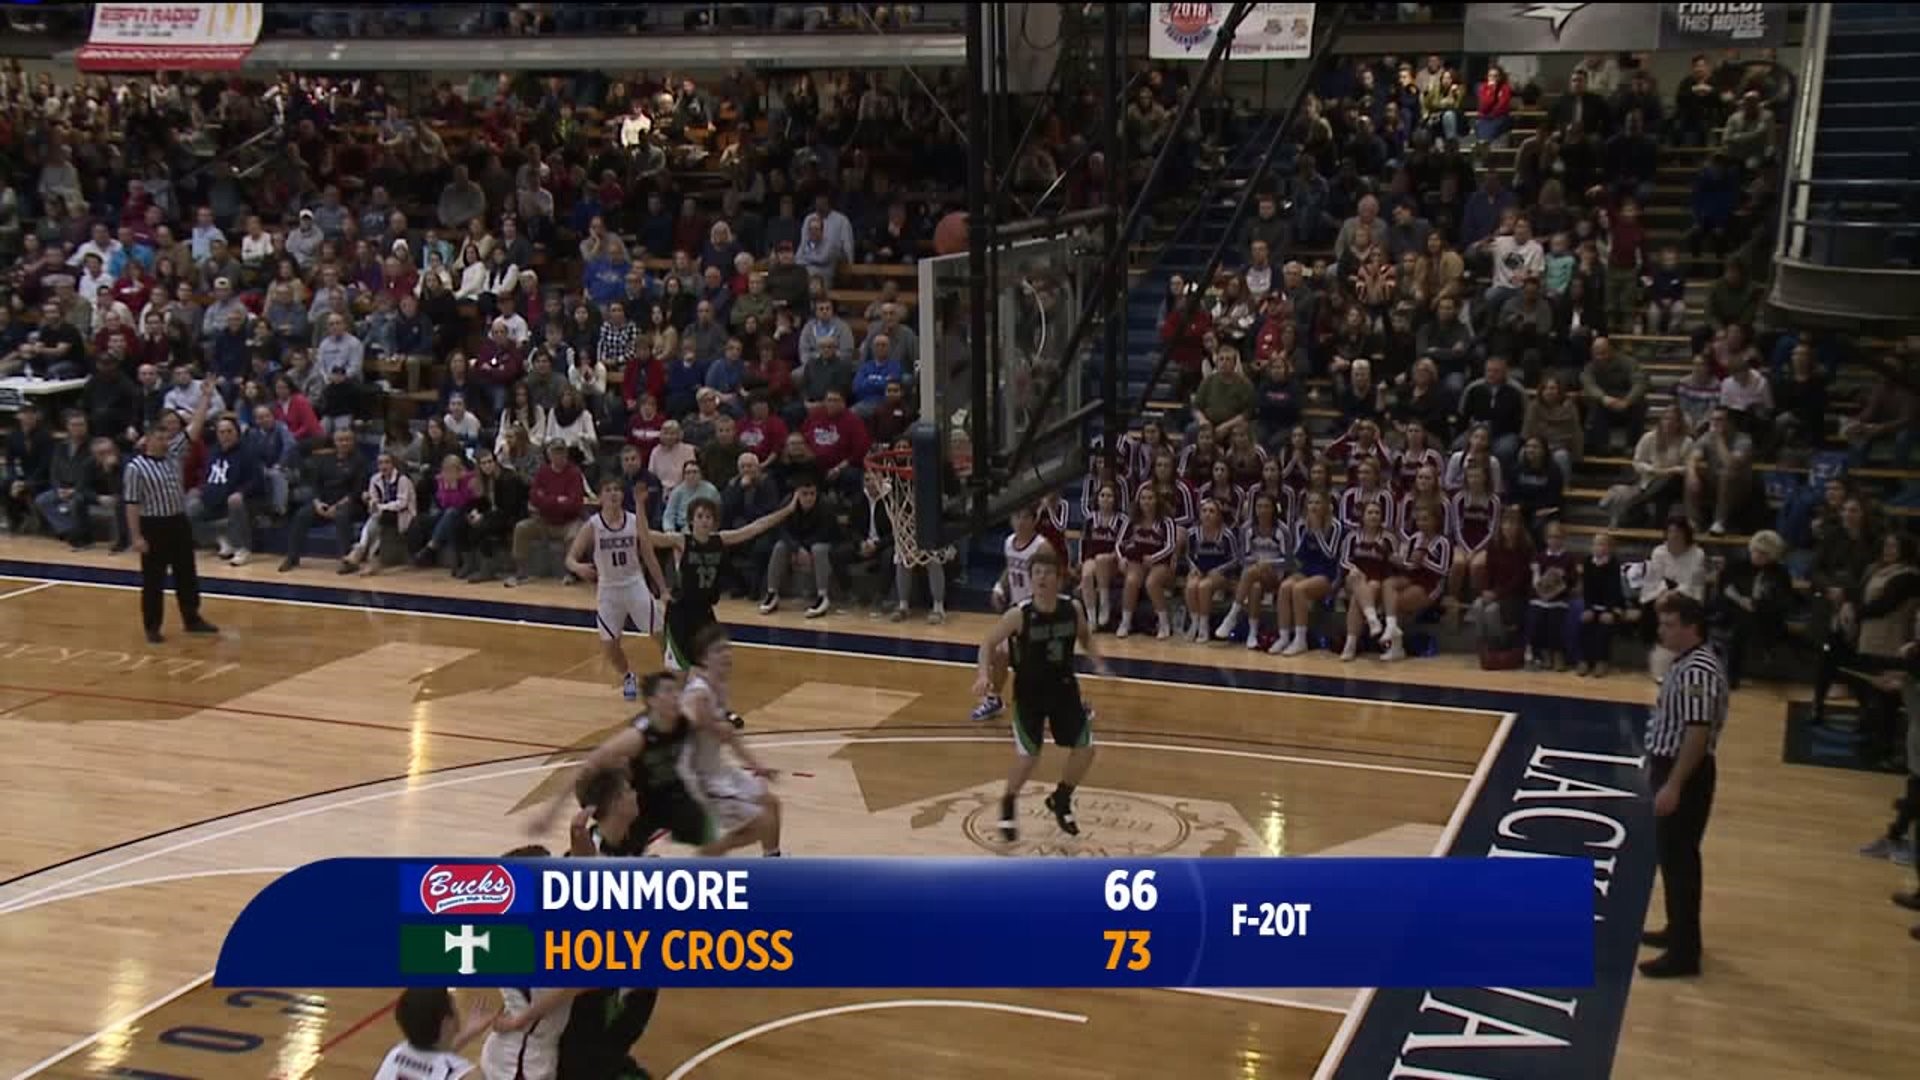 Holy Cross vs Dunmore boys